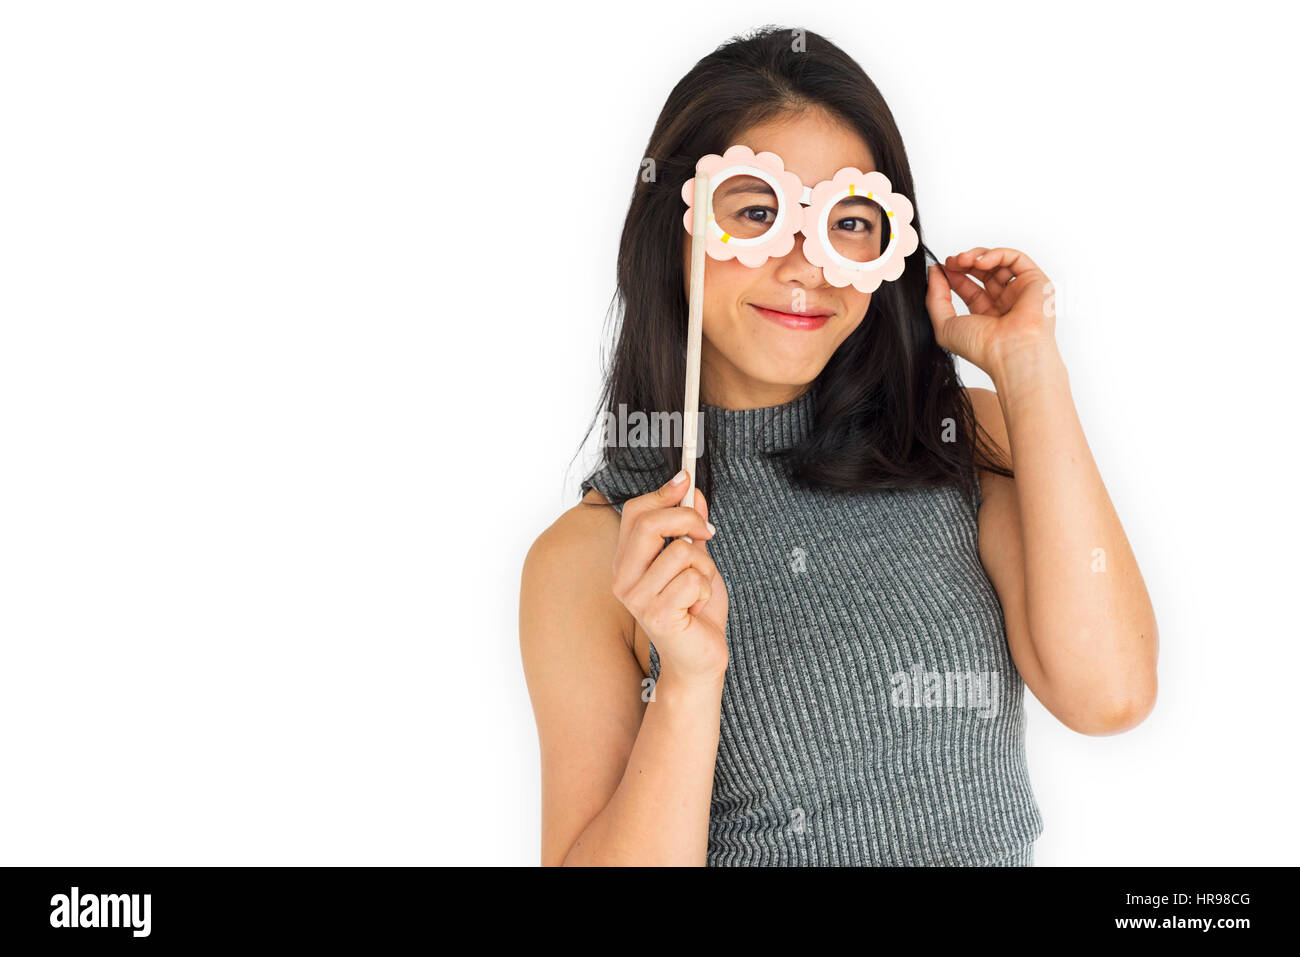 Le donne asiatiche per adulti sorriso felice concetto Foto Stock